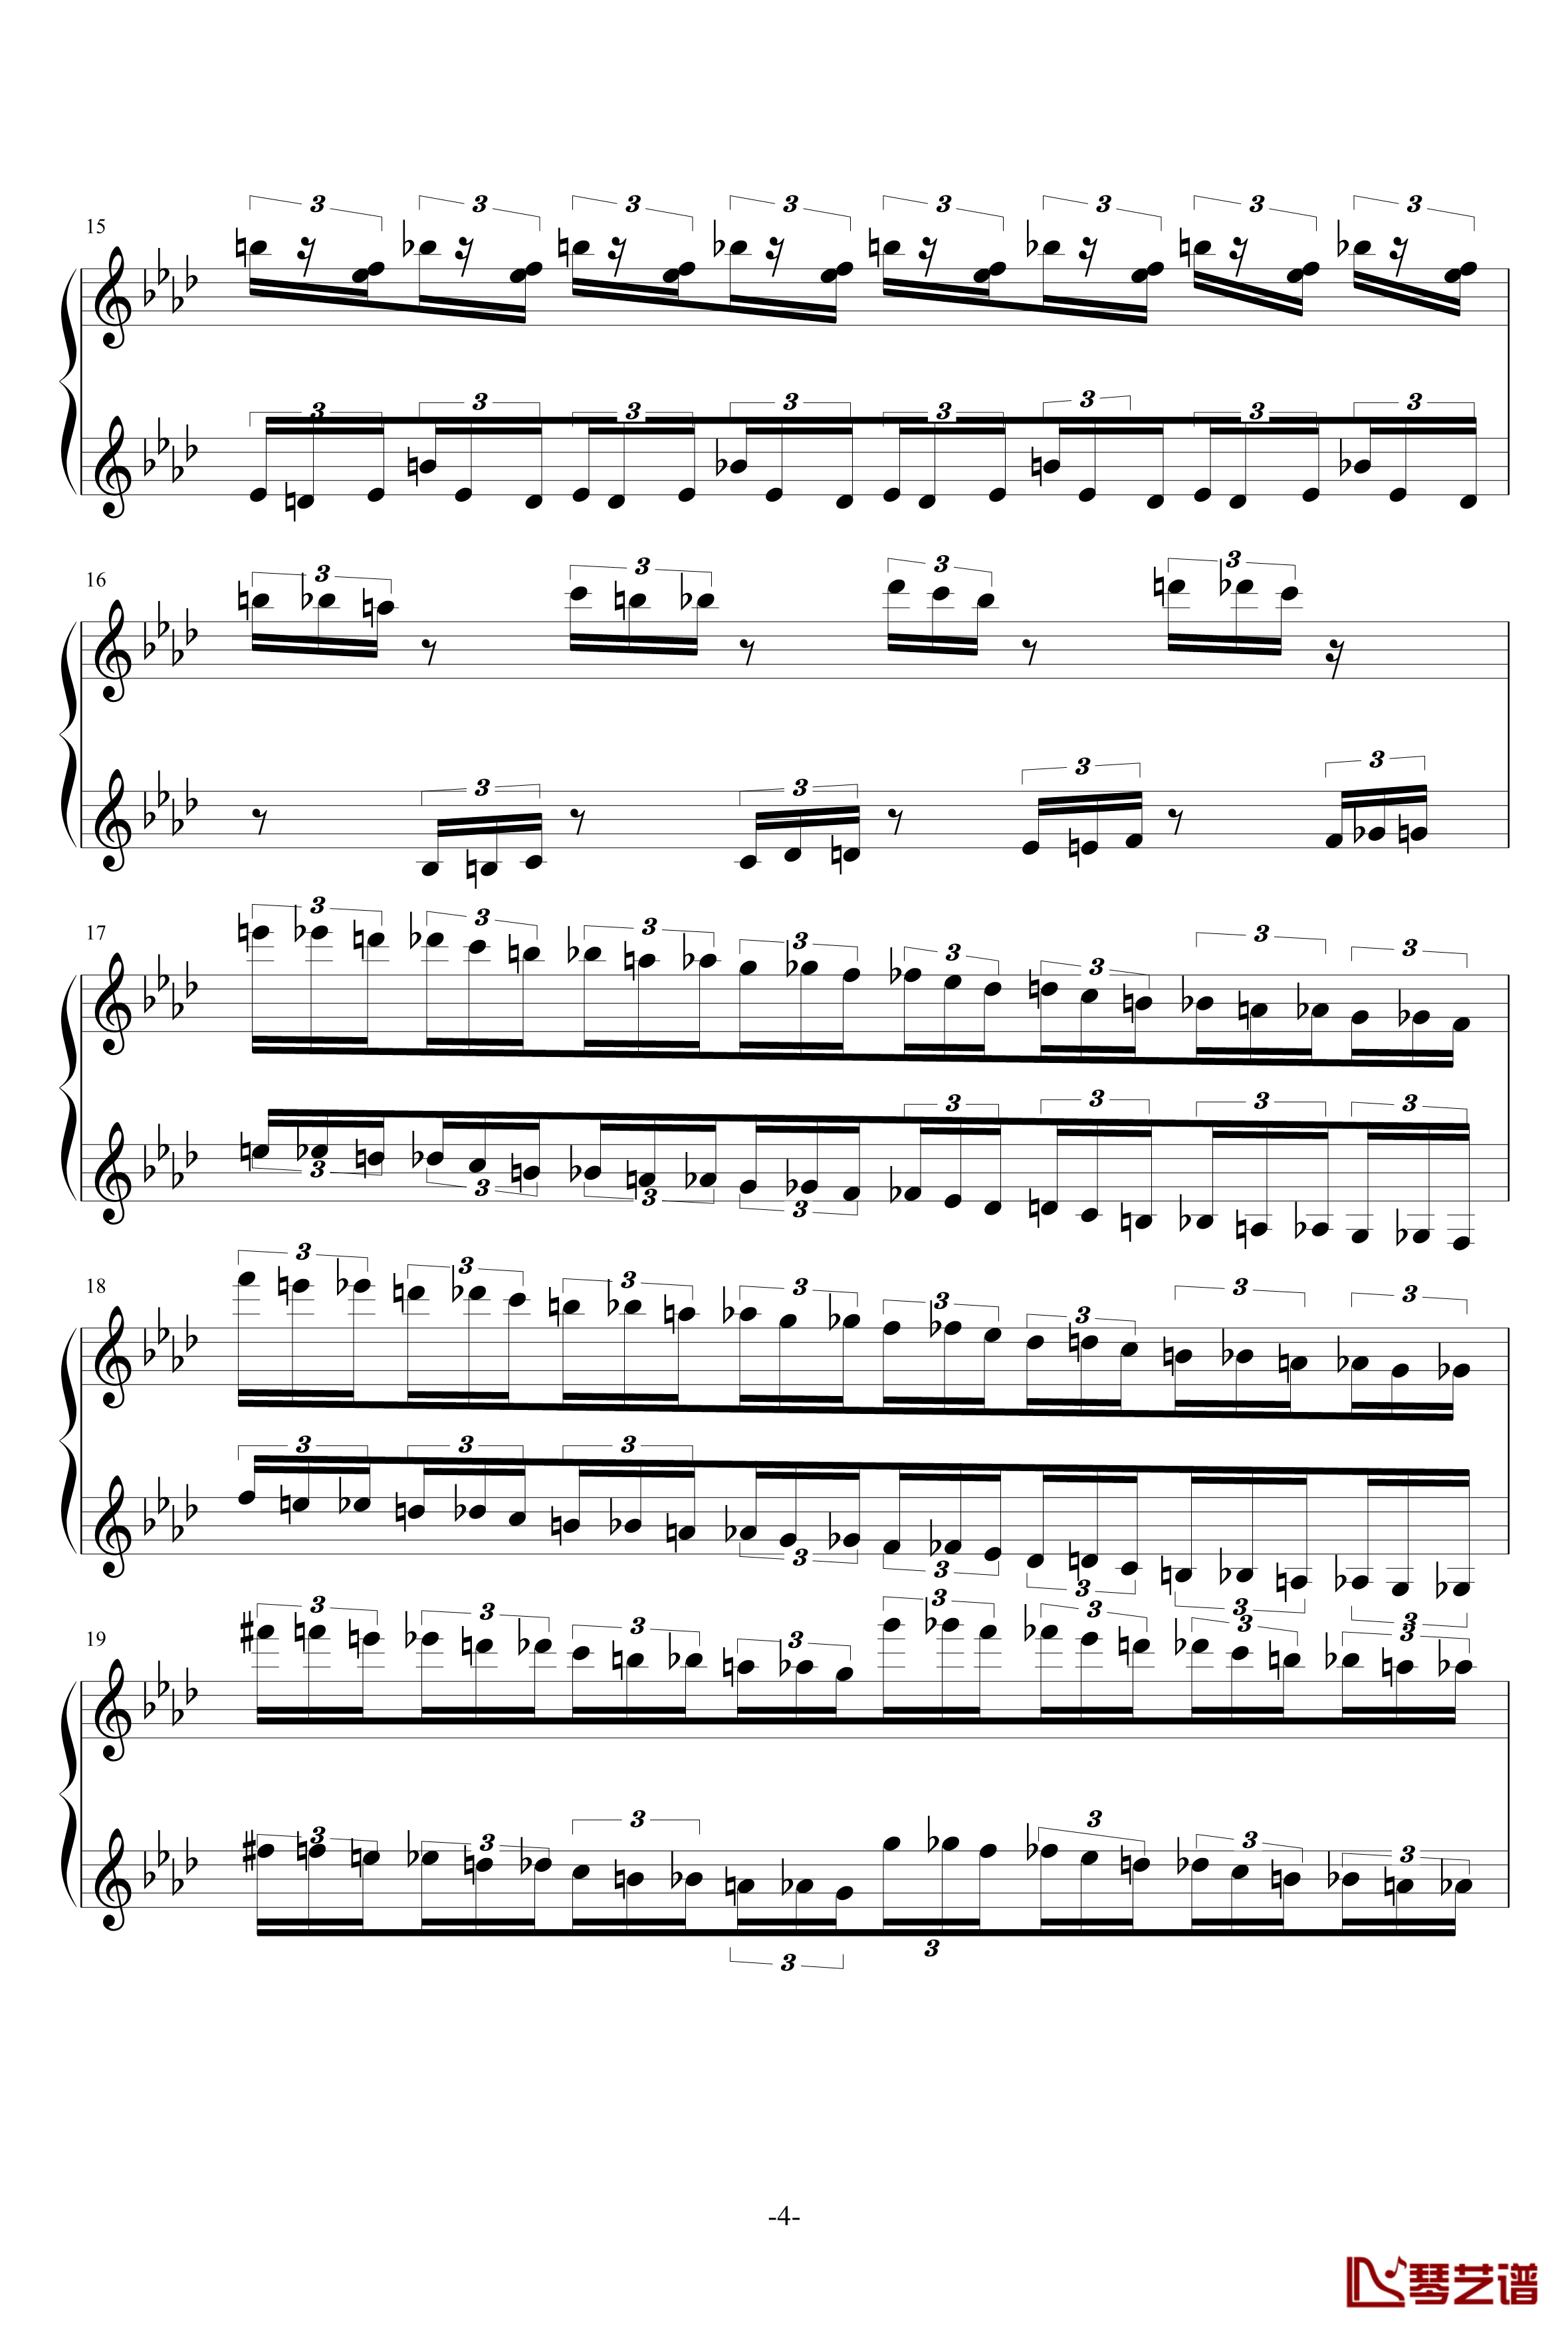 半音阶神经病练习曲钢琴谱-FangDong4